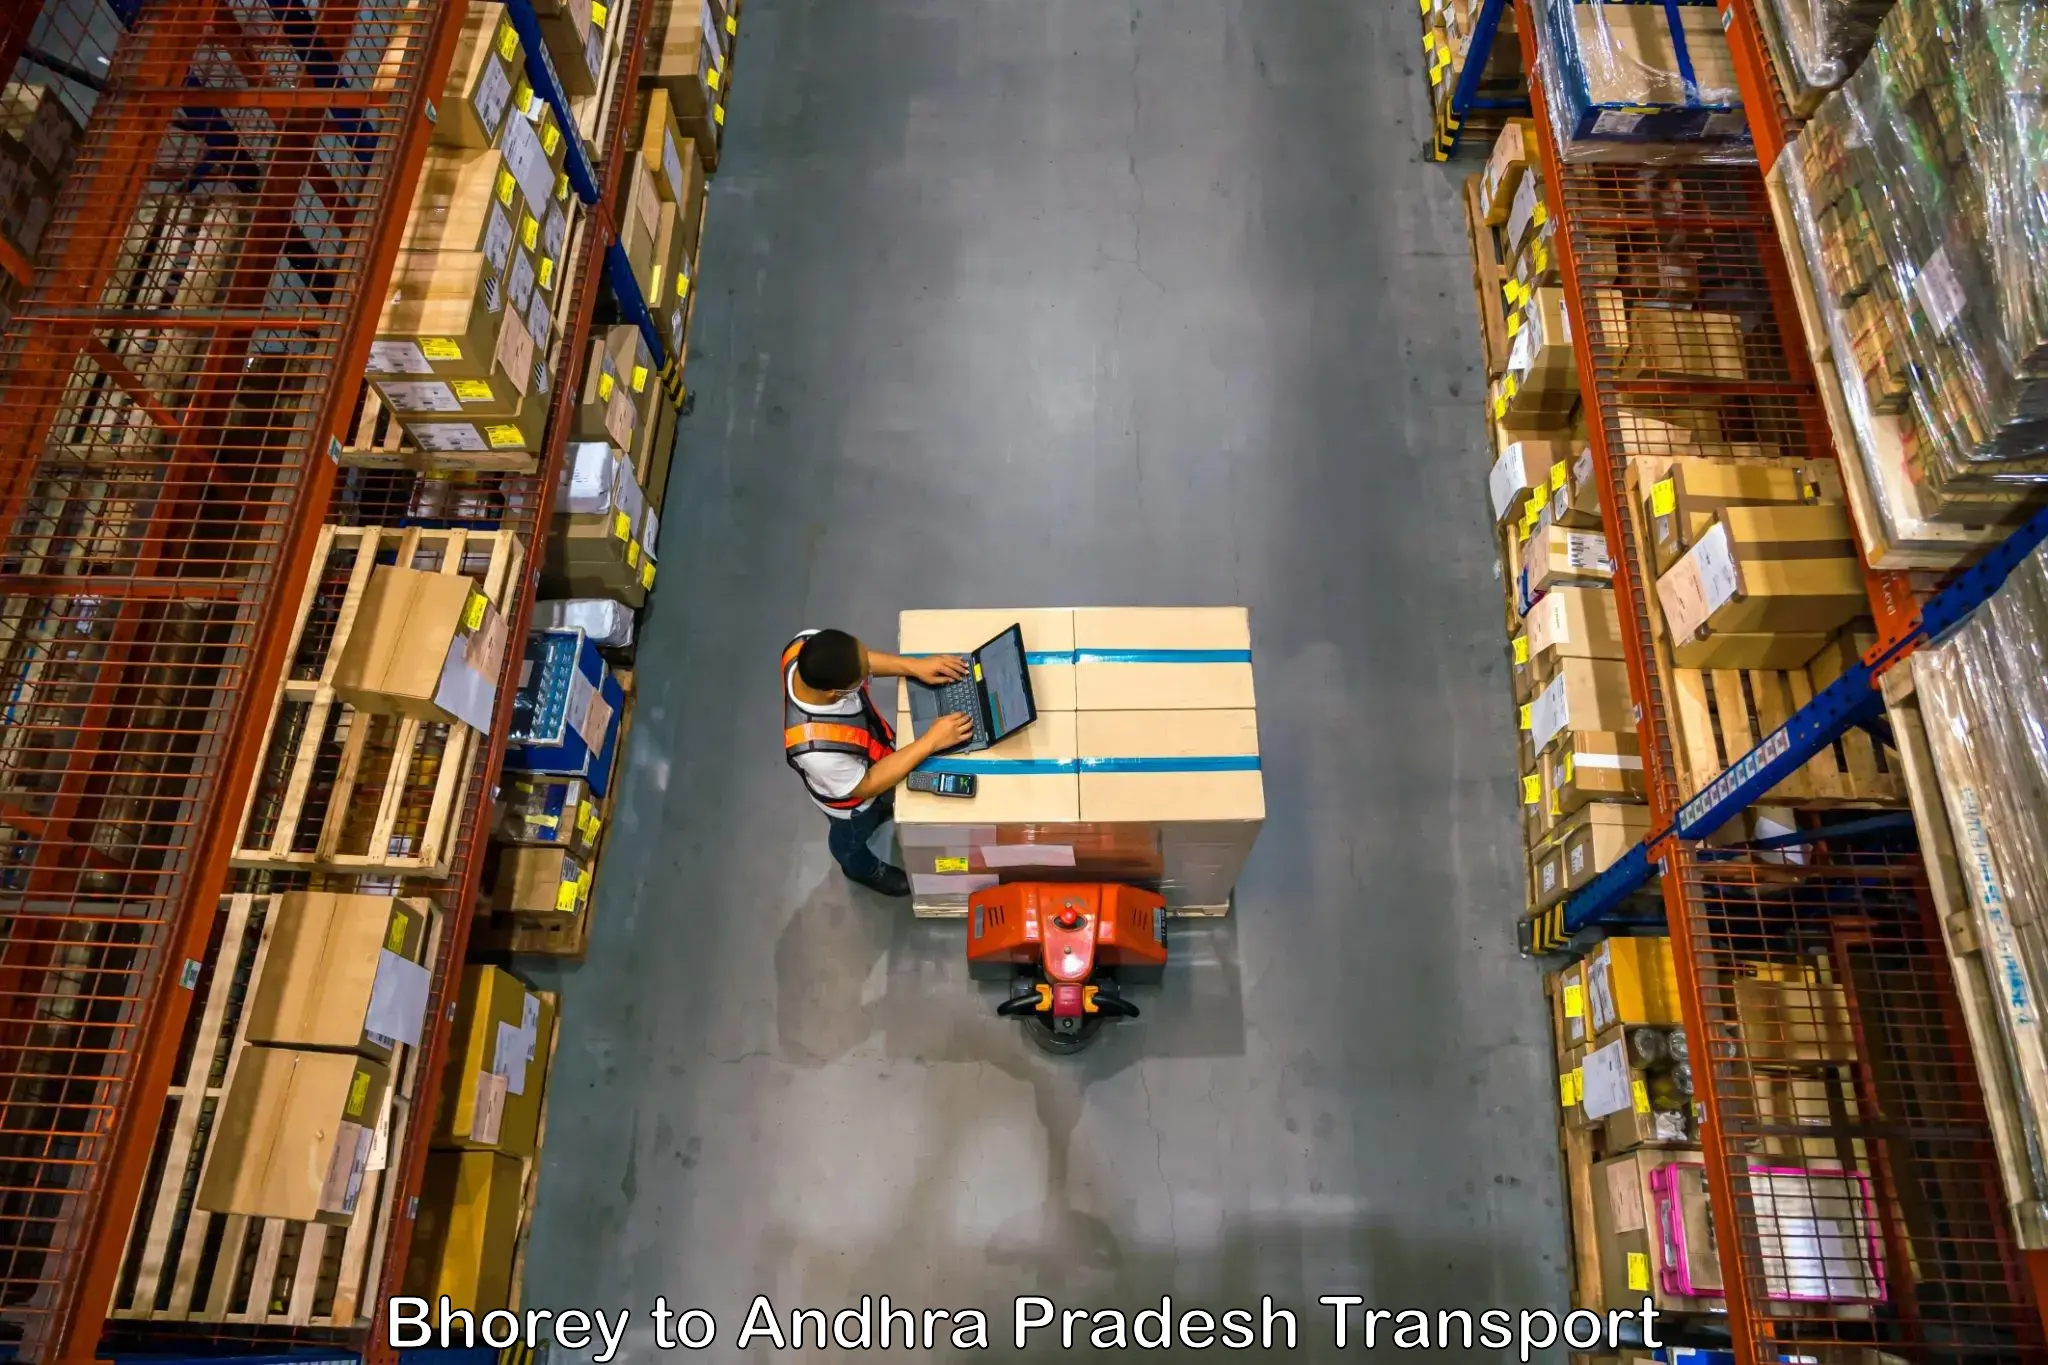 Package delivery services Bhorey to Vijayawada